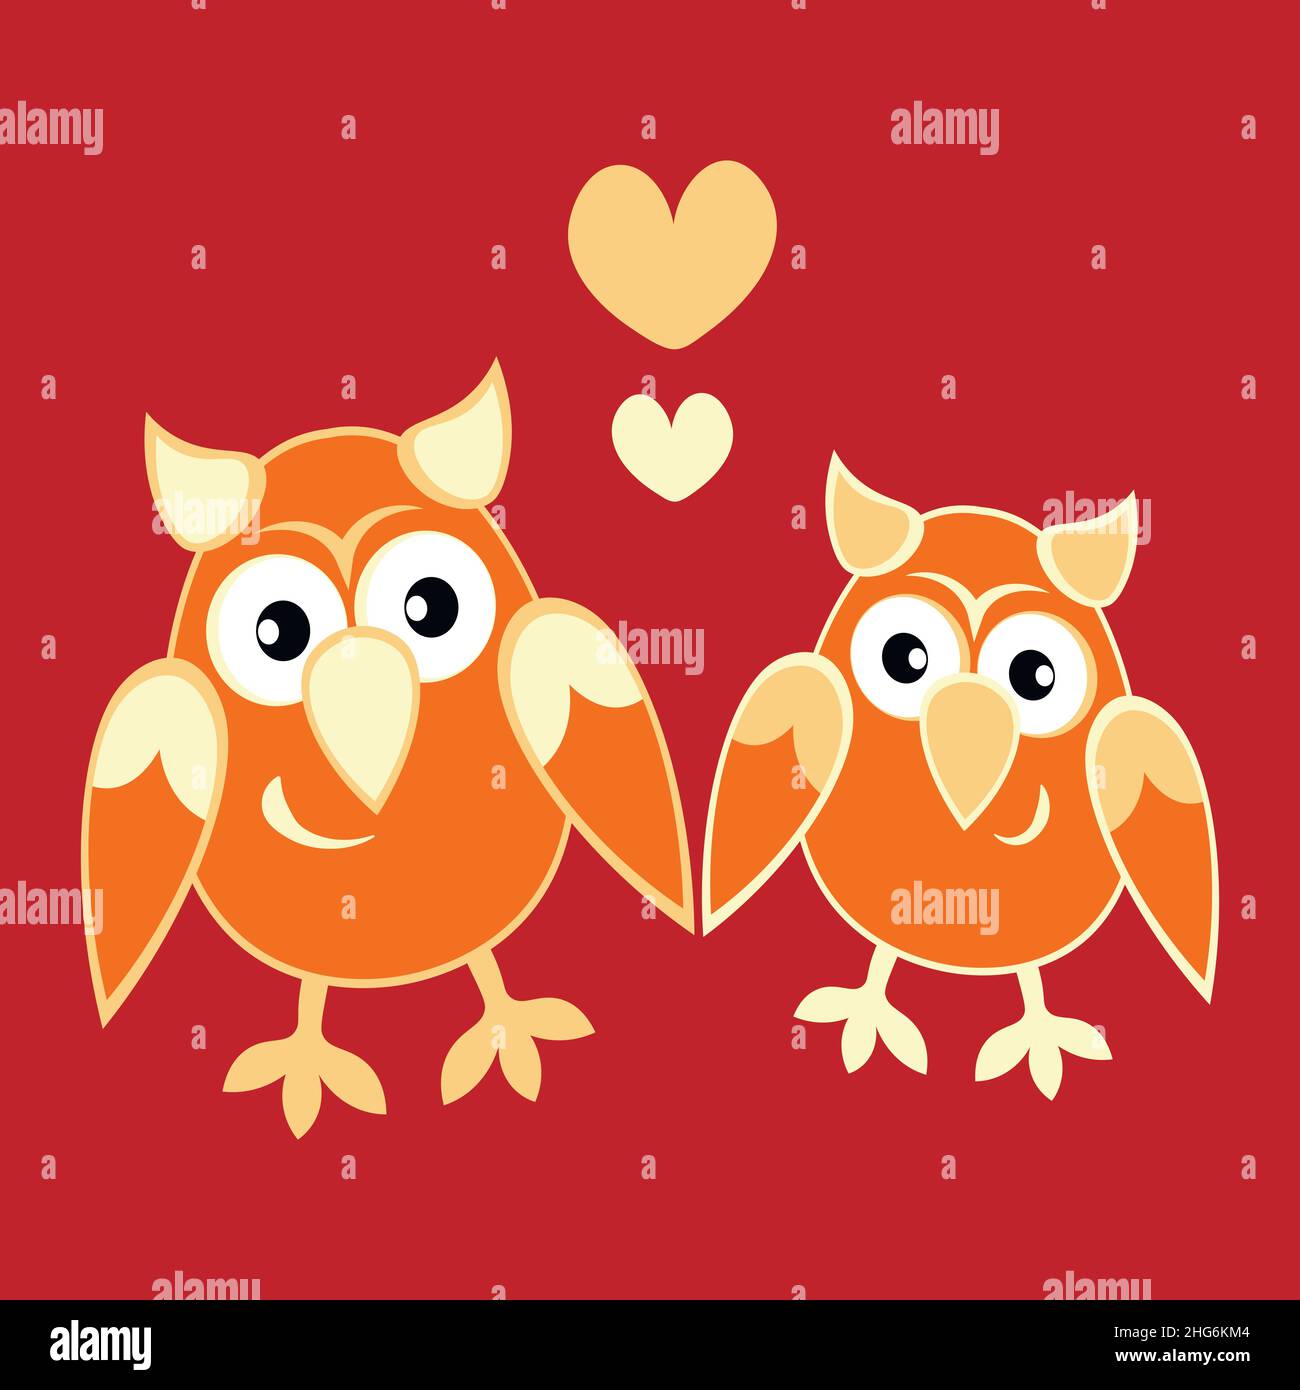 Abbildung auf quadratischem Hintergrund - zwei Eulen, die sich in Herzen verlieben. Cartoon-Vögel. Pastiche. Zeichnung von Kindern. Designelement von Büchern, Notizbüchern, Postkarten, Innenausstattung Stock Vektor